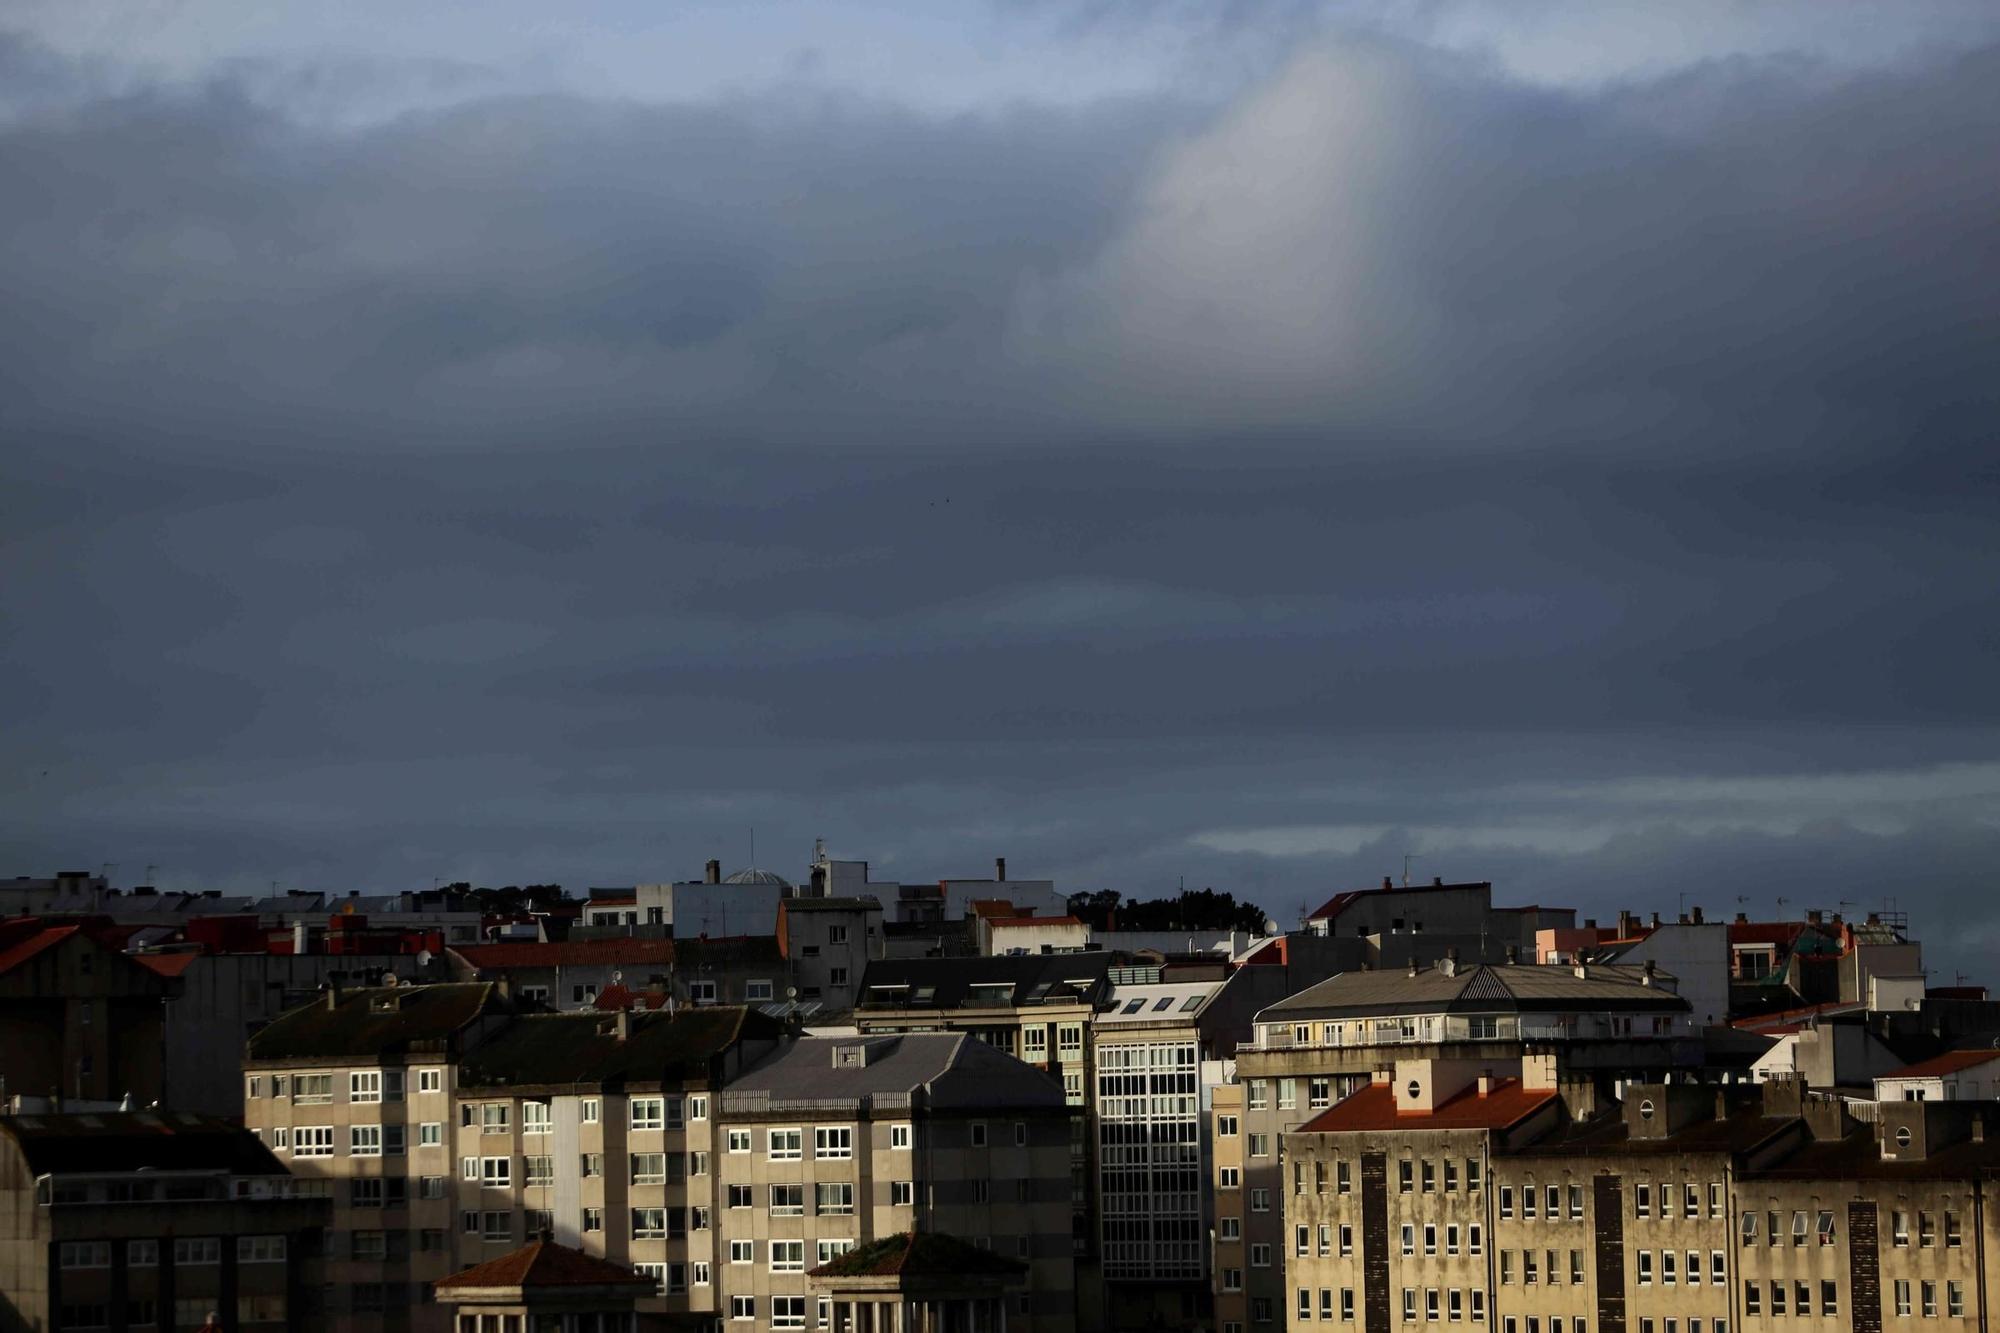 La Xunta activa una alerta naranja por temporal costero en el litoral de A Coruña